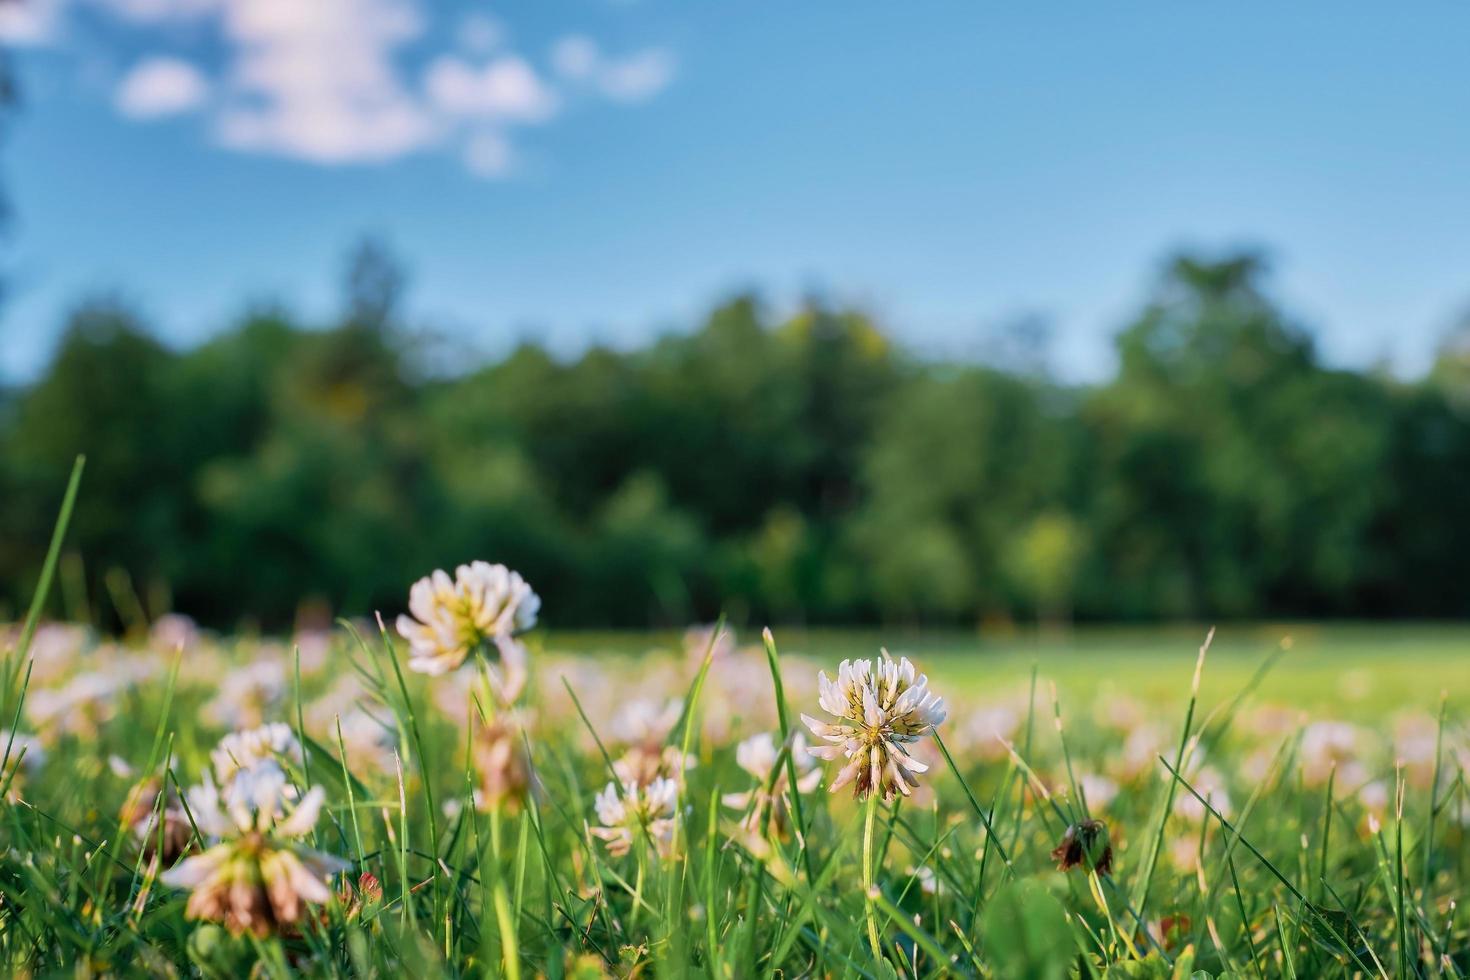 schöne natürliche sommer- oder frühlingspanoramalandschaft mit kleeblumen auf einer wiese gegen einen blauen himmel mit weißen wolken und einer waldgrenze. helles, ausdrucksstarkes künstlerisches bild der sommernatur. foto